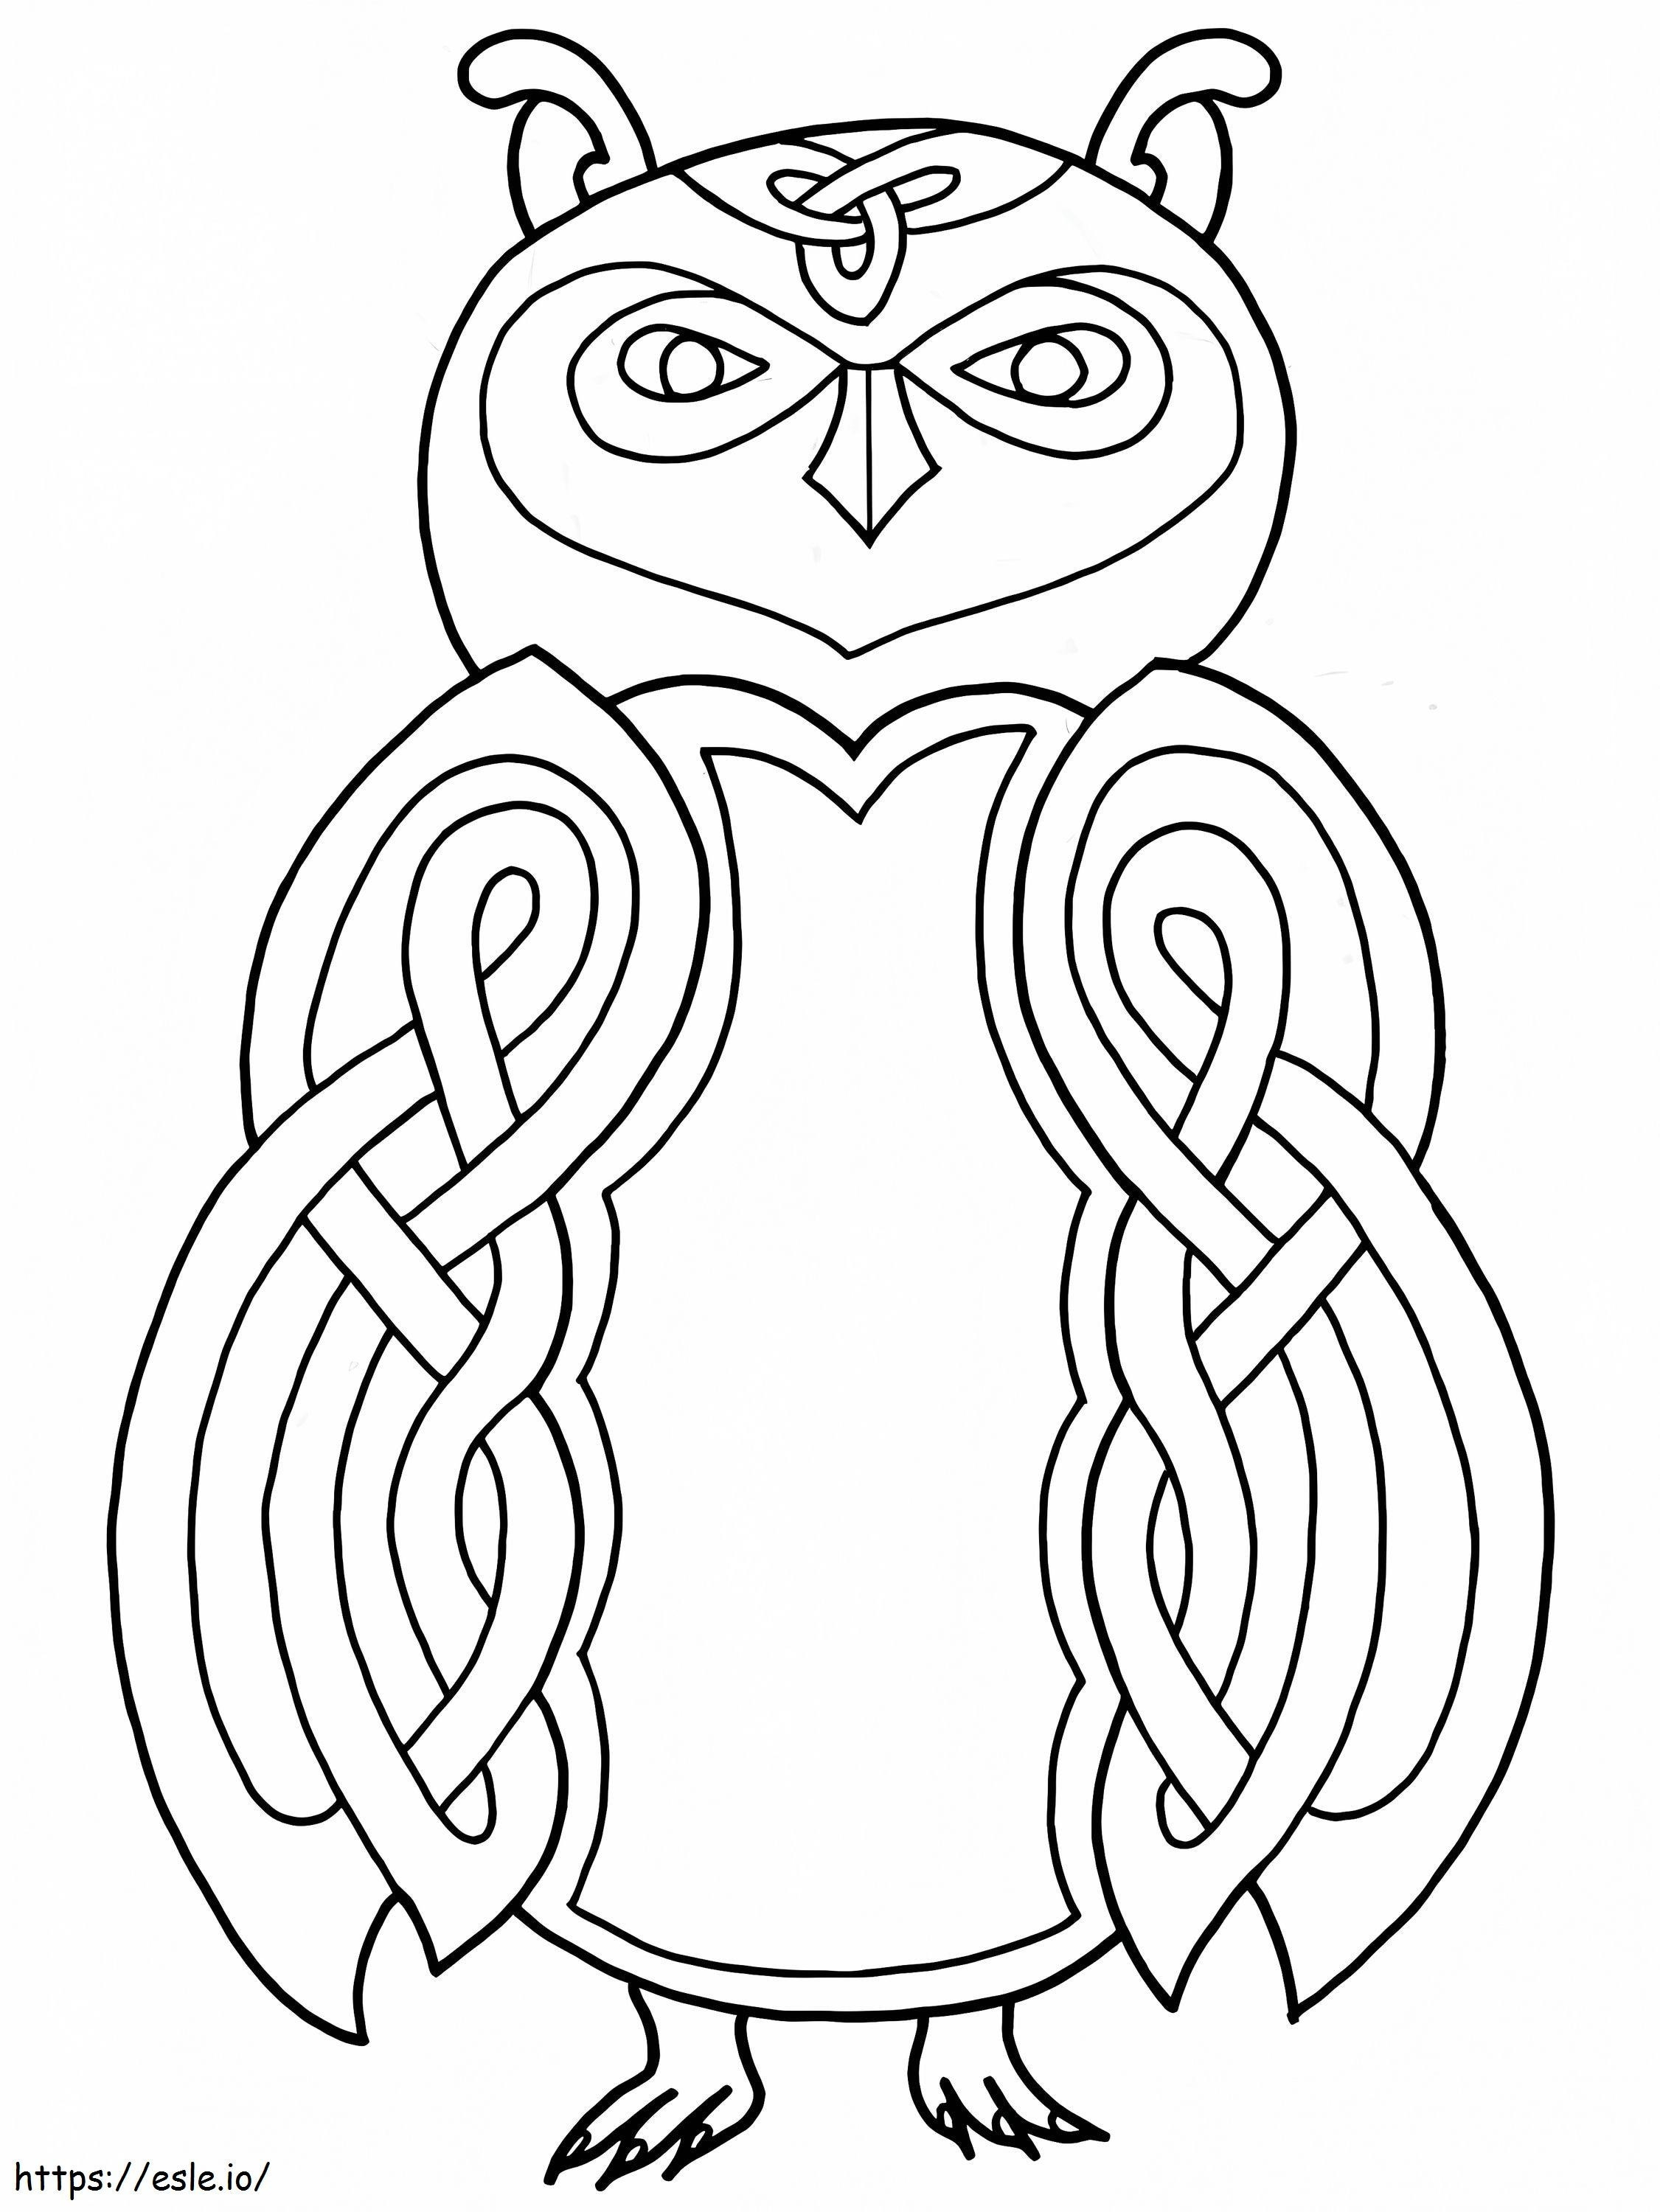 Desain Burung Hantu Celtic Gambar Mewarnai